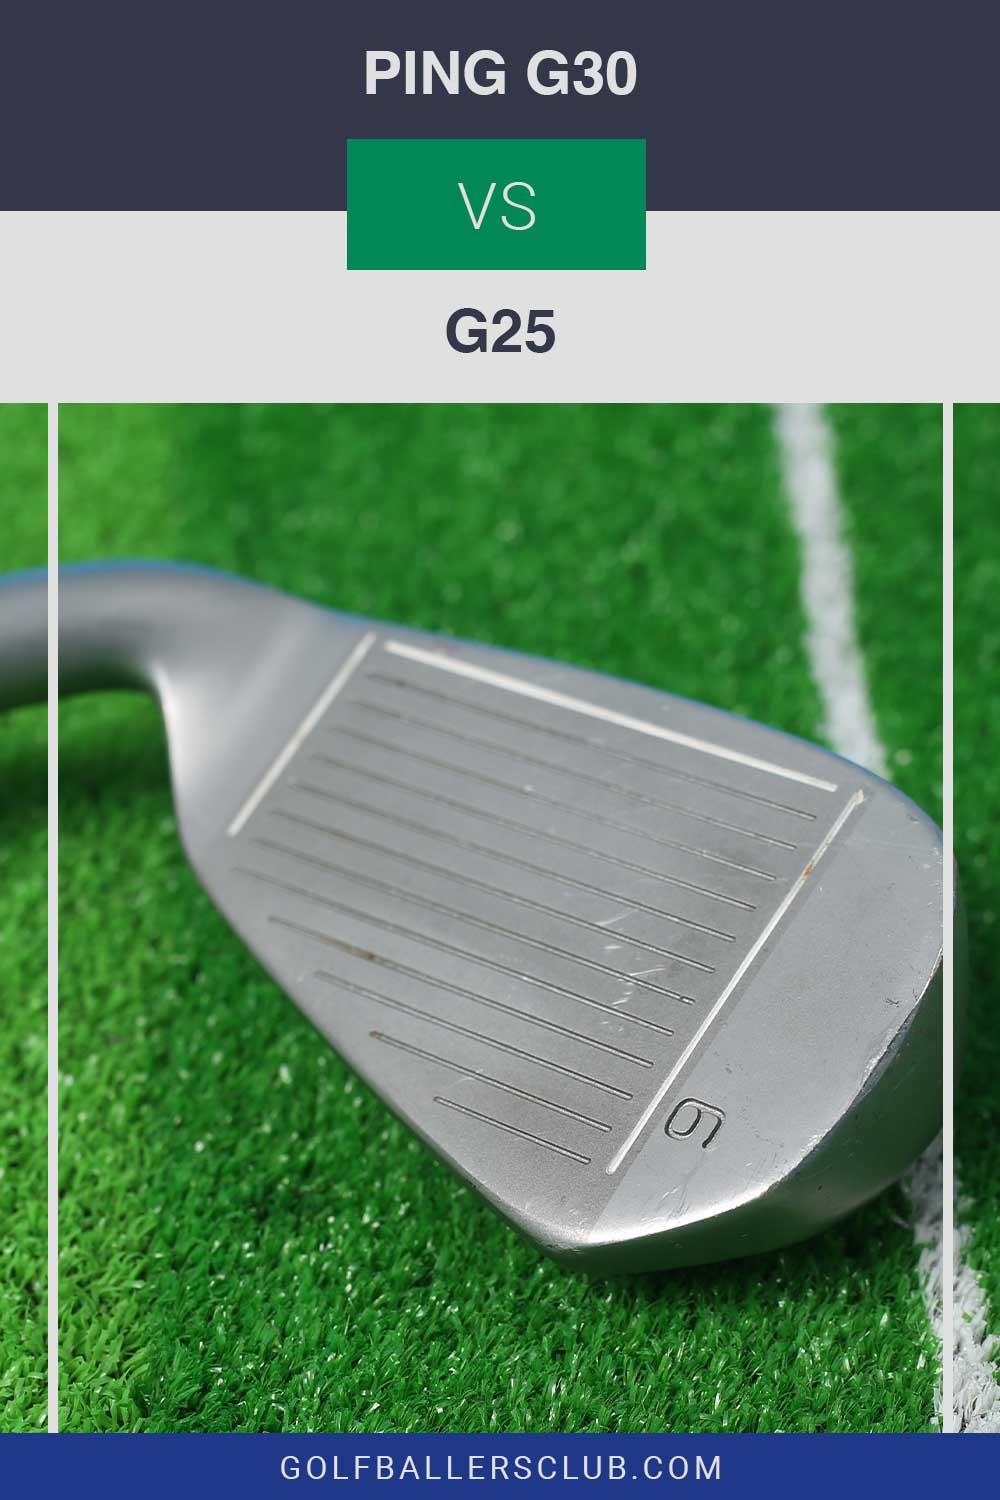 A golf iron on artificial grass - PING G30 vs G25.